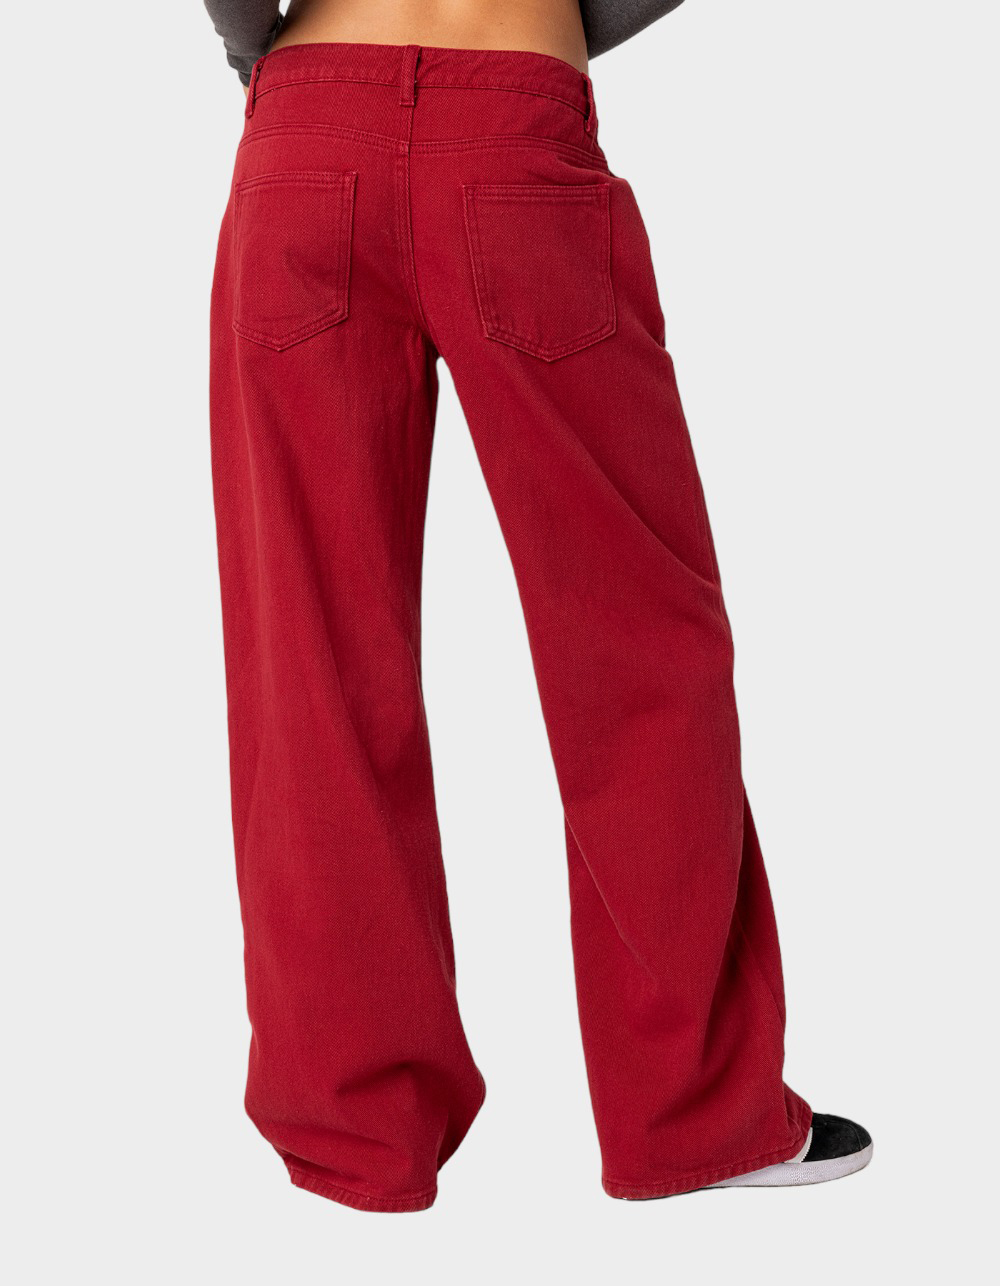 EDIKTED women's red jogging pants size XS – Solé Resale Boutique